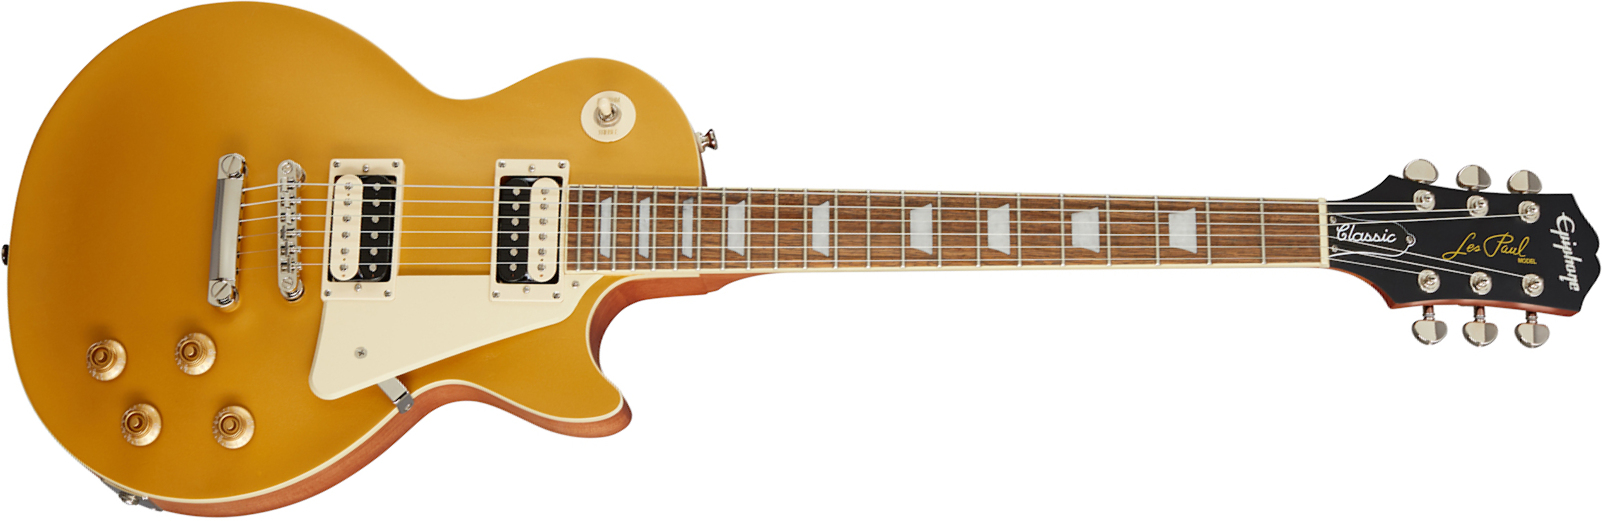 Epiphone Les Paul Classic Worn 2020 Hh Ht Rw - Worn Metallic Gold - Enkel gesneden elektrische gitaar - Main picture